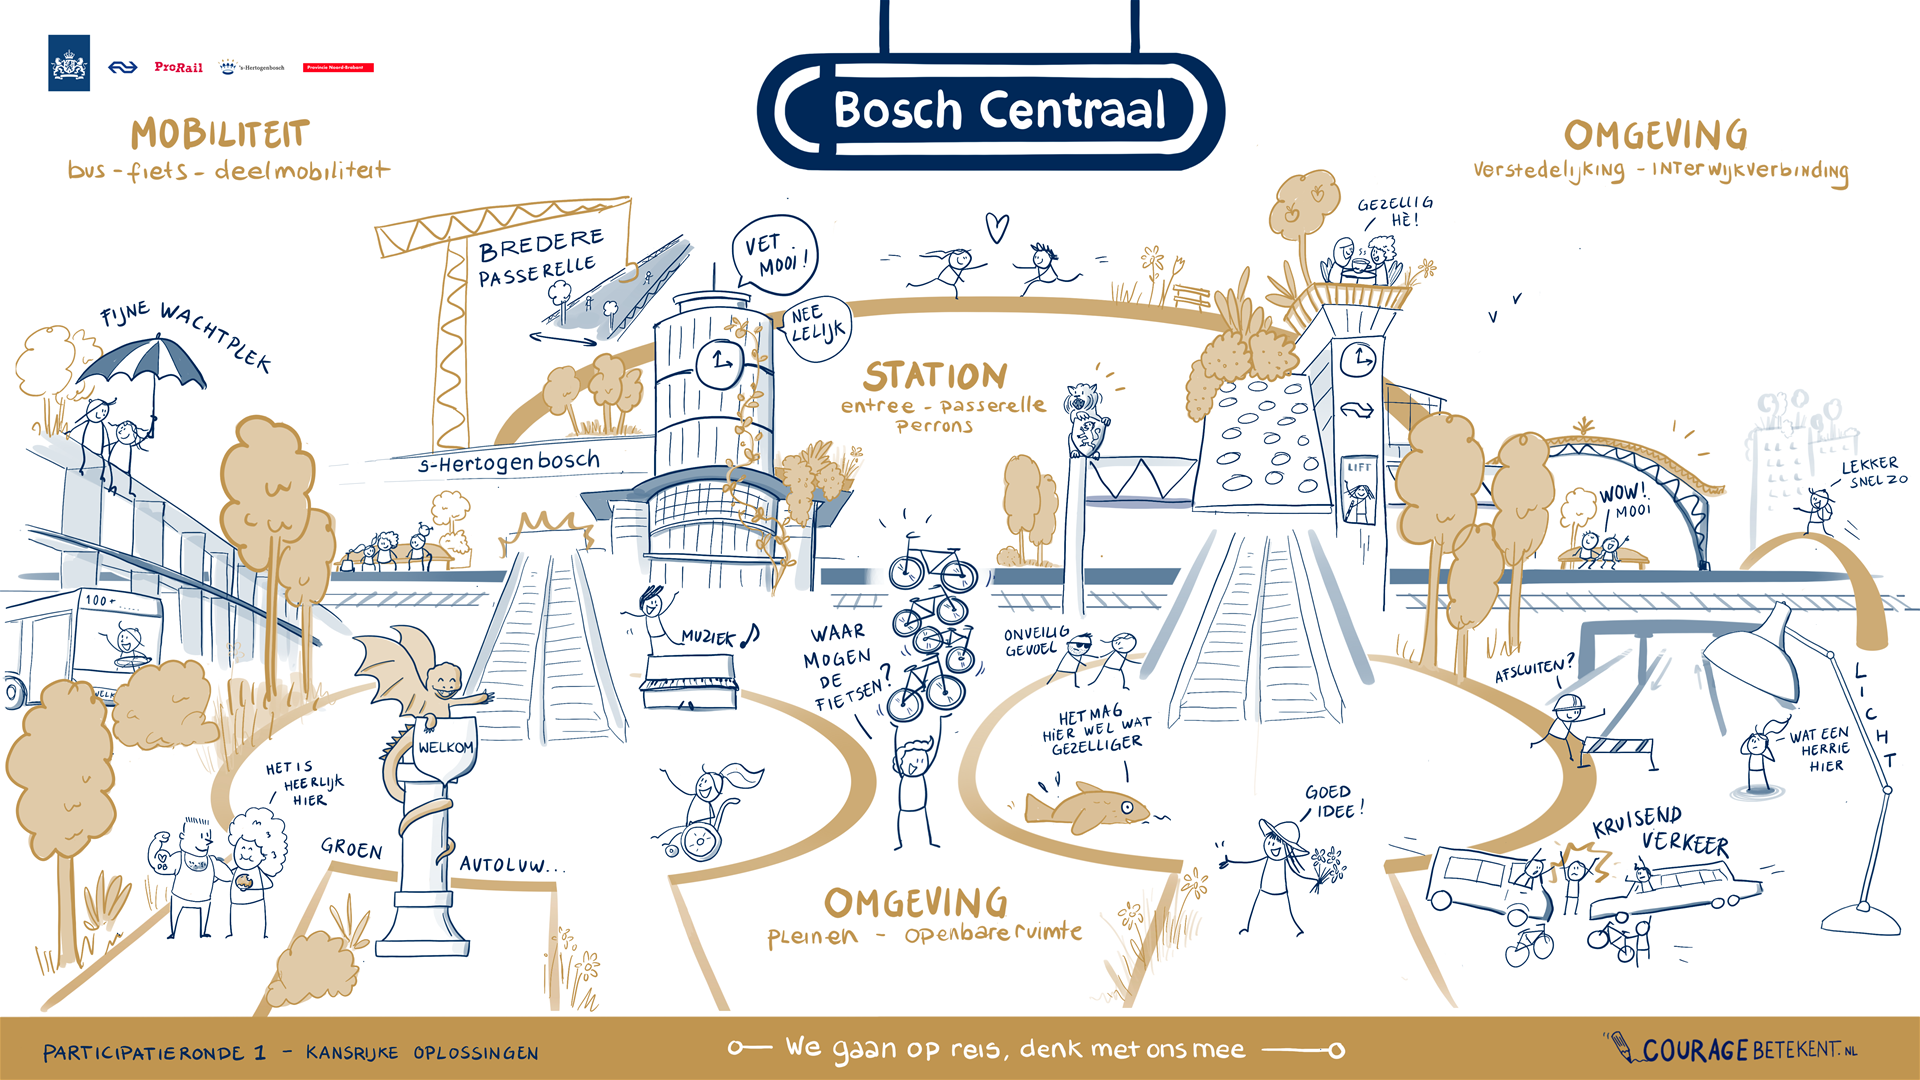 De samenvattingsschets o.b.v. de opgehaalde ervaringen en wensen over Bosch Centraal uit de eerste participatieronde